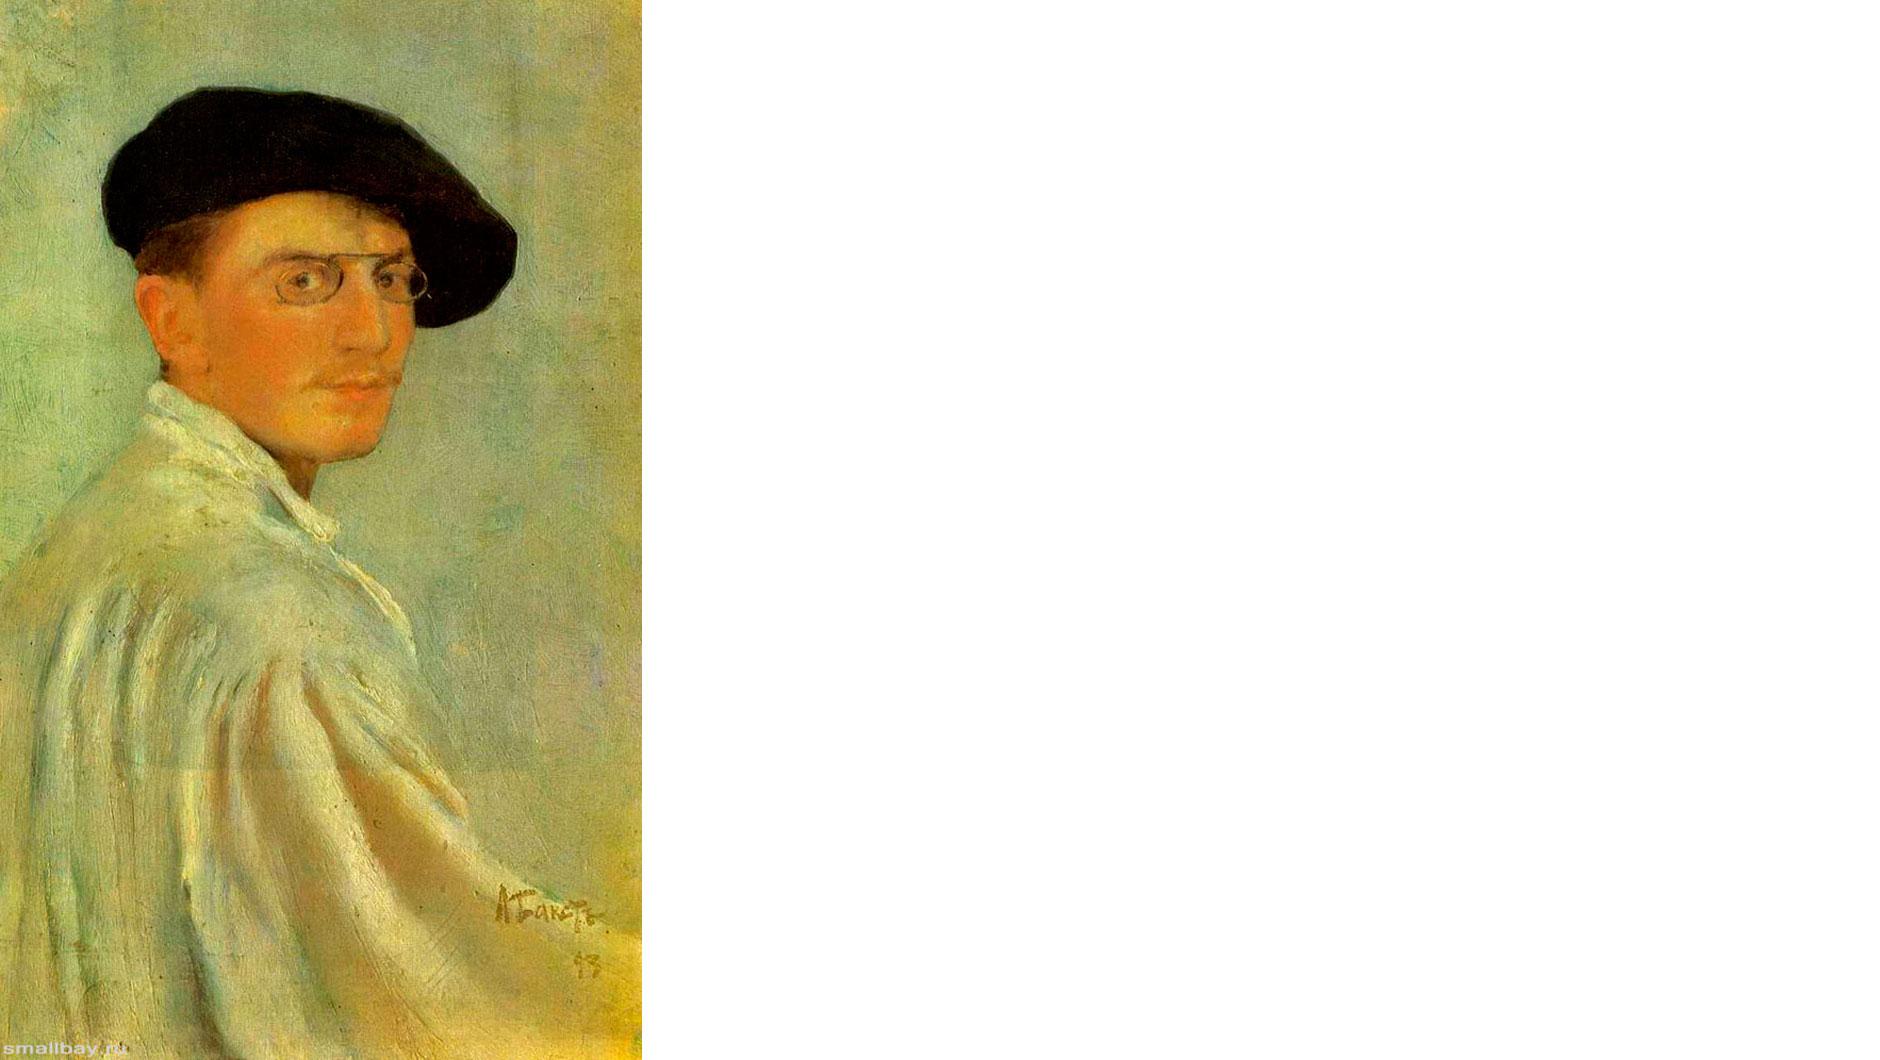 Леон Бакст, автопортрет, конец 19 века